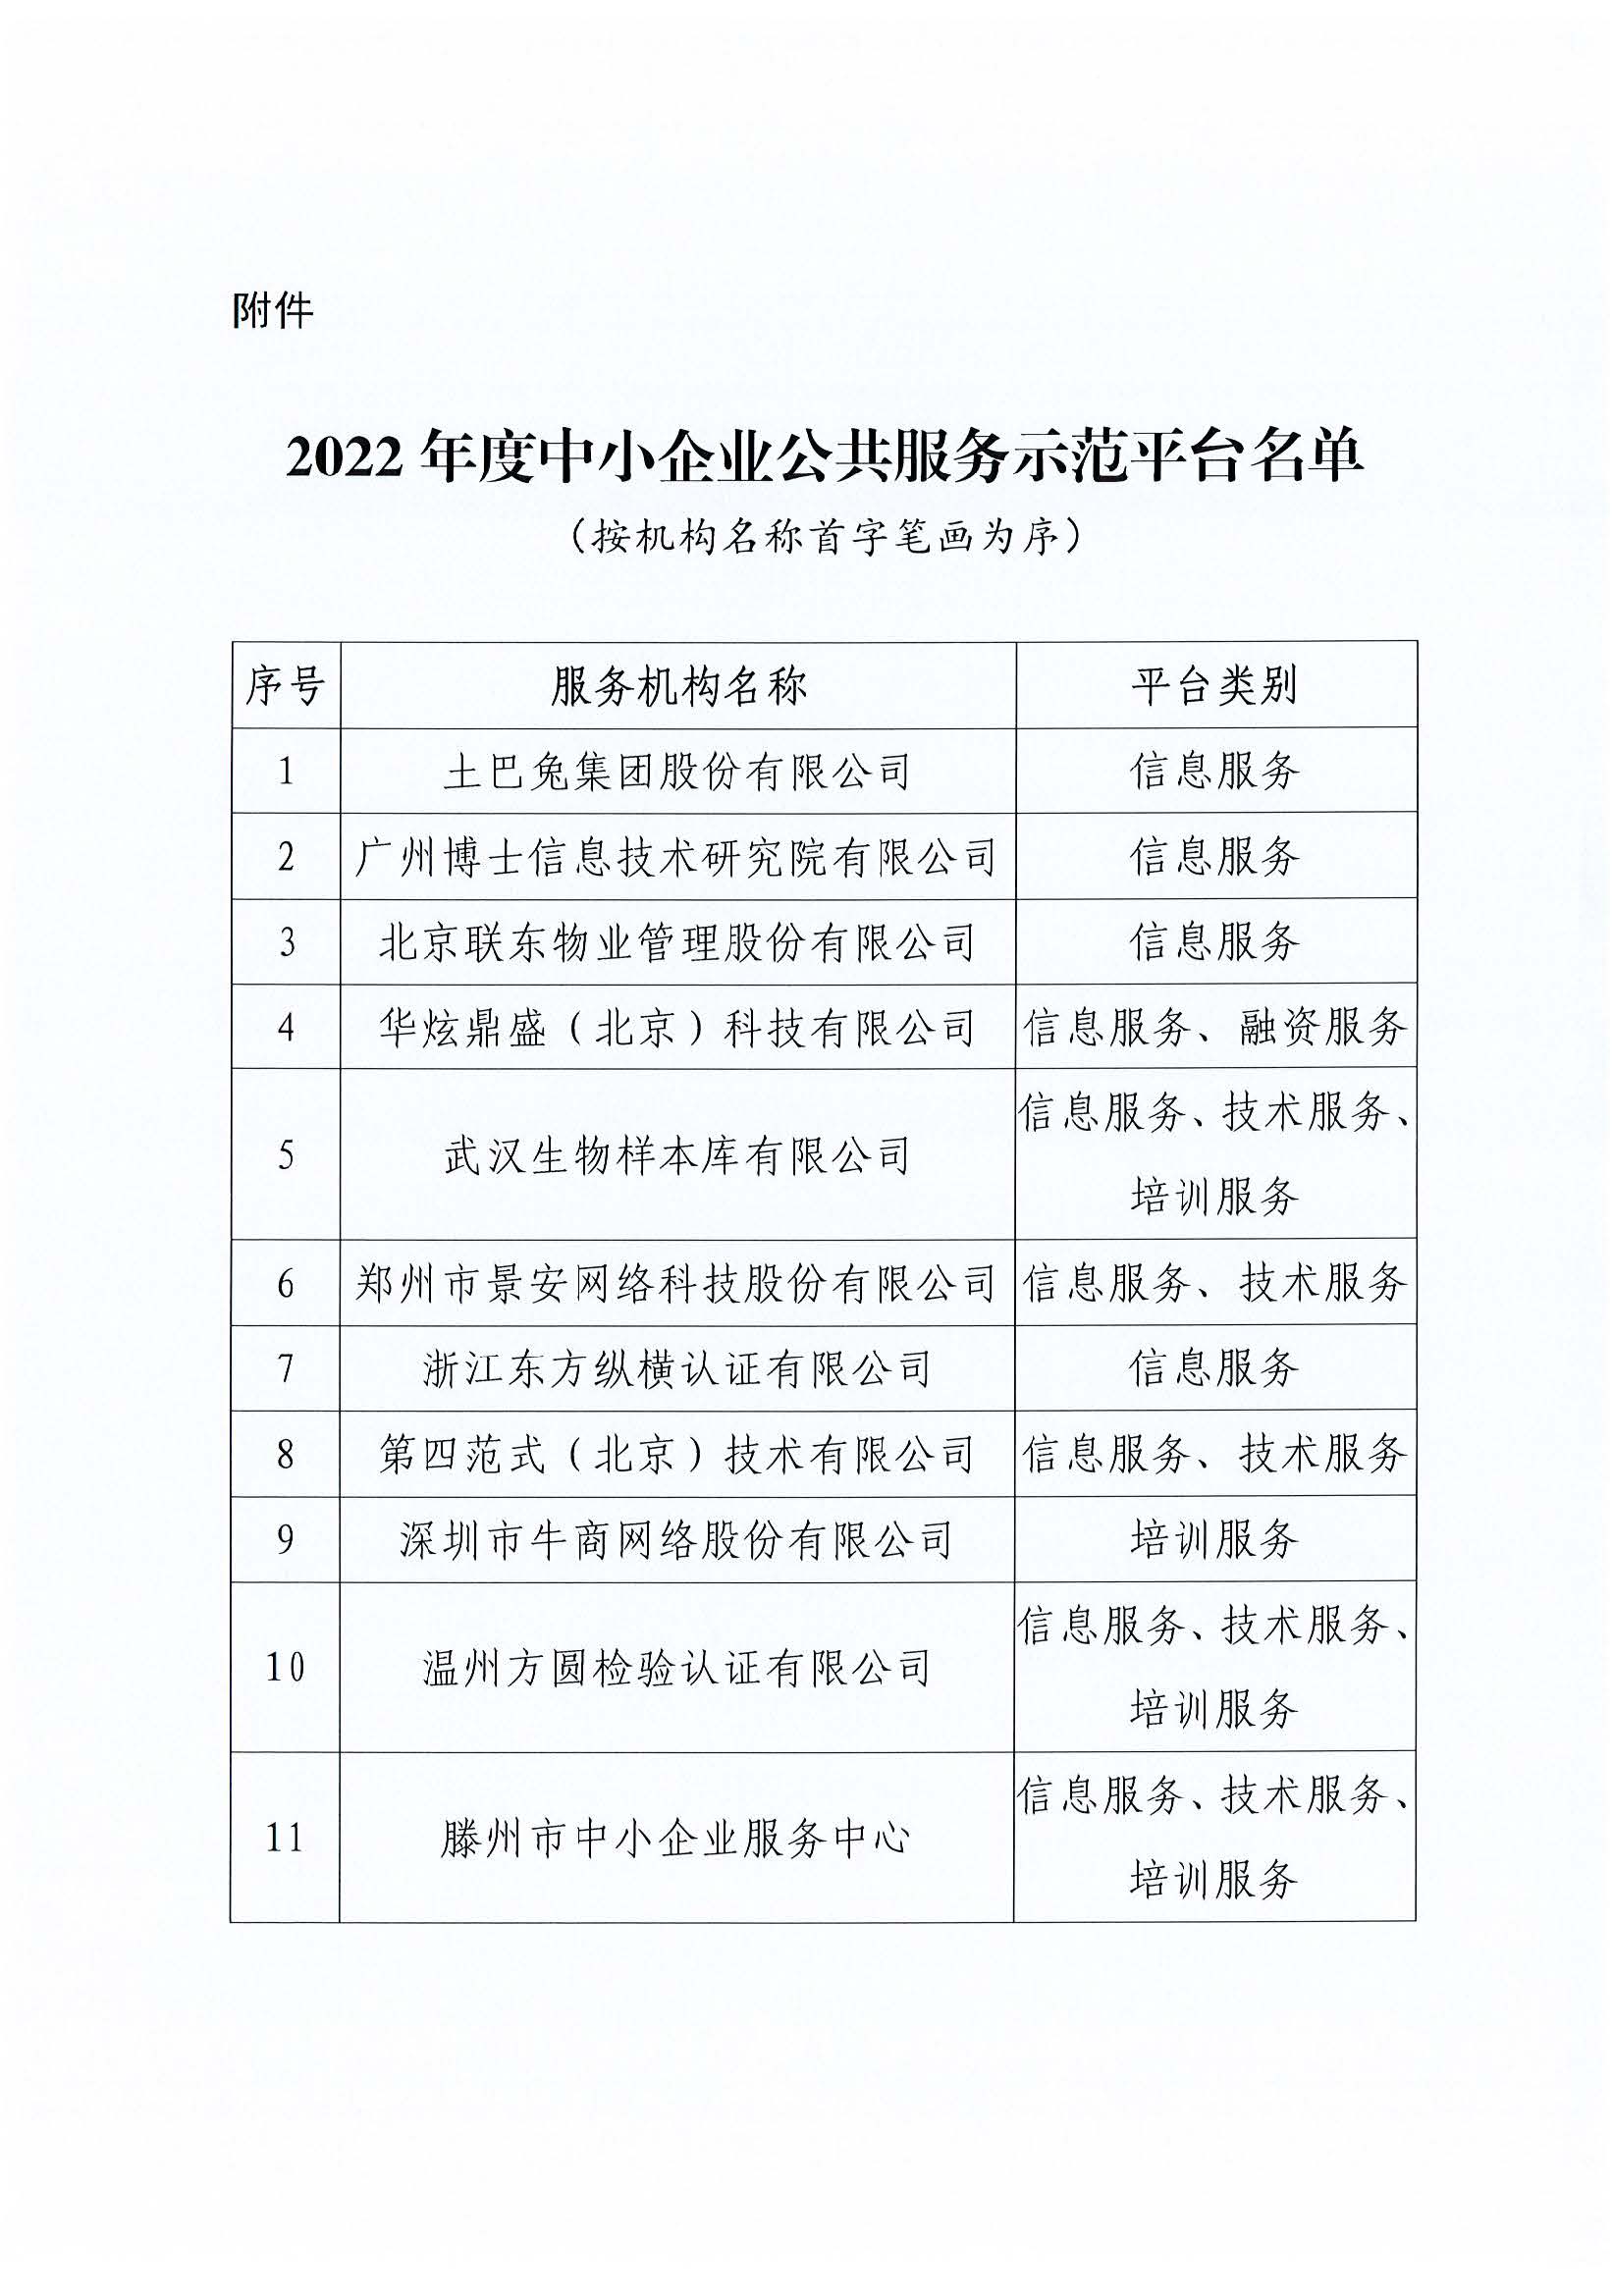 中国中小企业国际合作协会关于公布2022年度中小企业公共服务示范平台名单的通告_页面_3.jpg